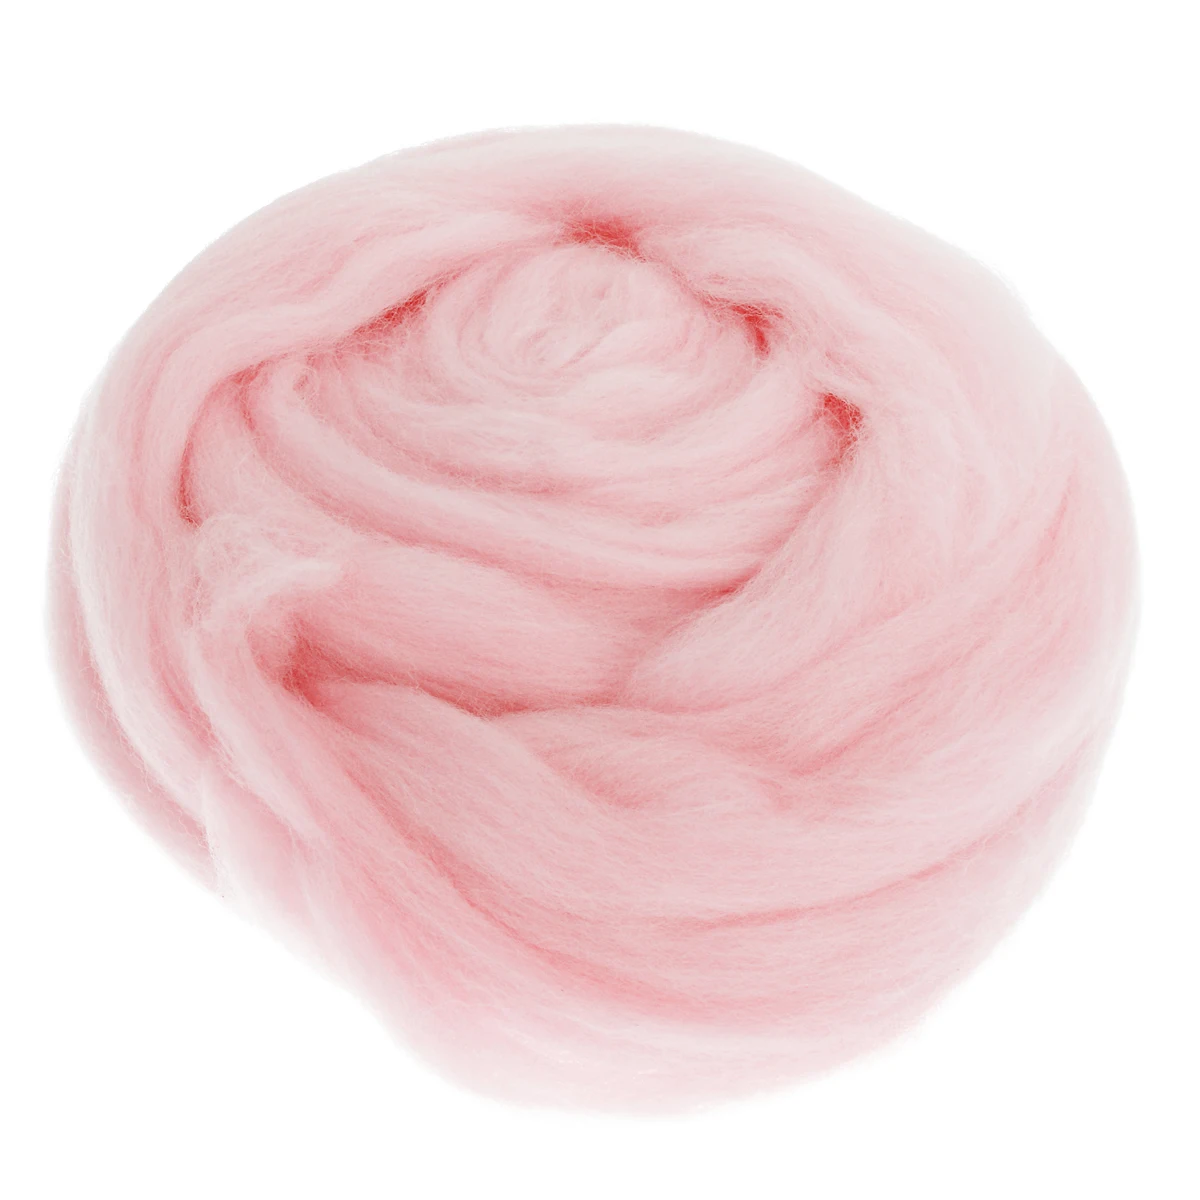 Mayitr 7 шт 5 г/каждая игла для валяния натуральная белая/розовая шерсть для 3D проектов для животных валяния шерсть мягкое валяние Шерстяное волокно